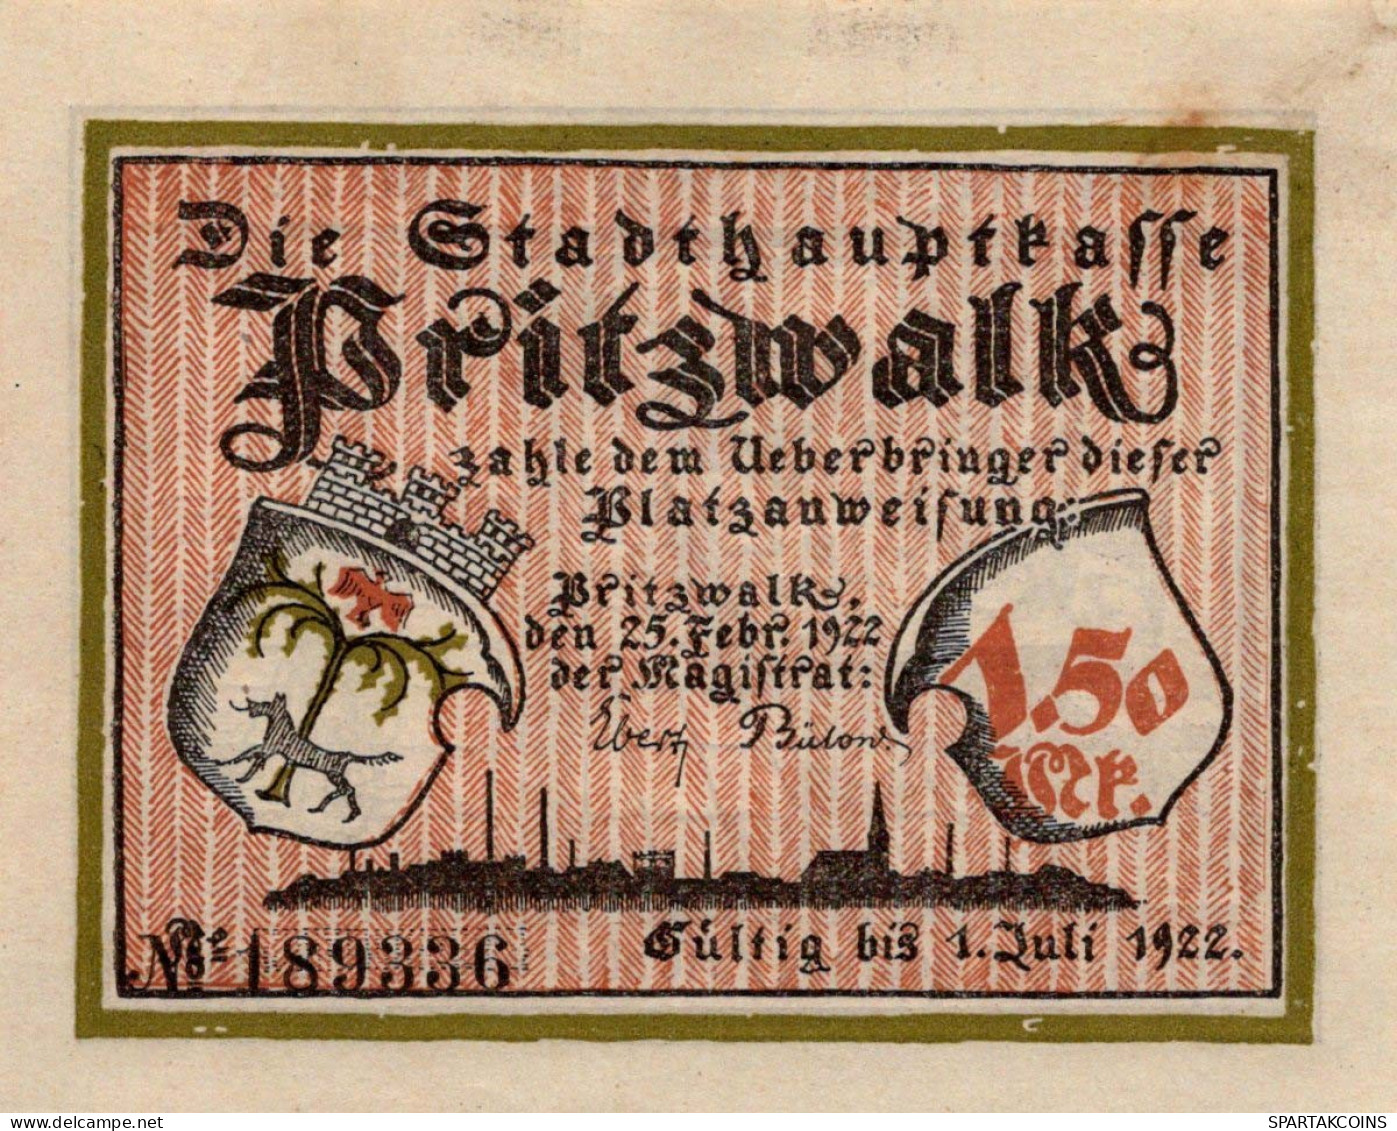 1.5 MARK 1922 Stadt PRITZWALK Brandenburg UNC DEUTSCHLAND Notgeld #PB747 - [11] Local Banknote Issues